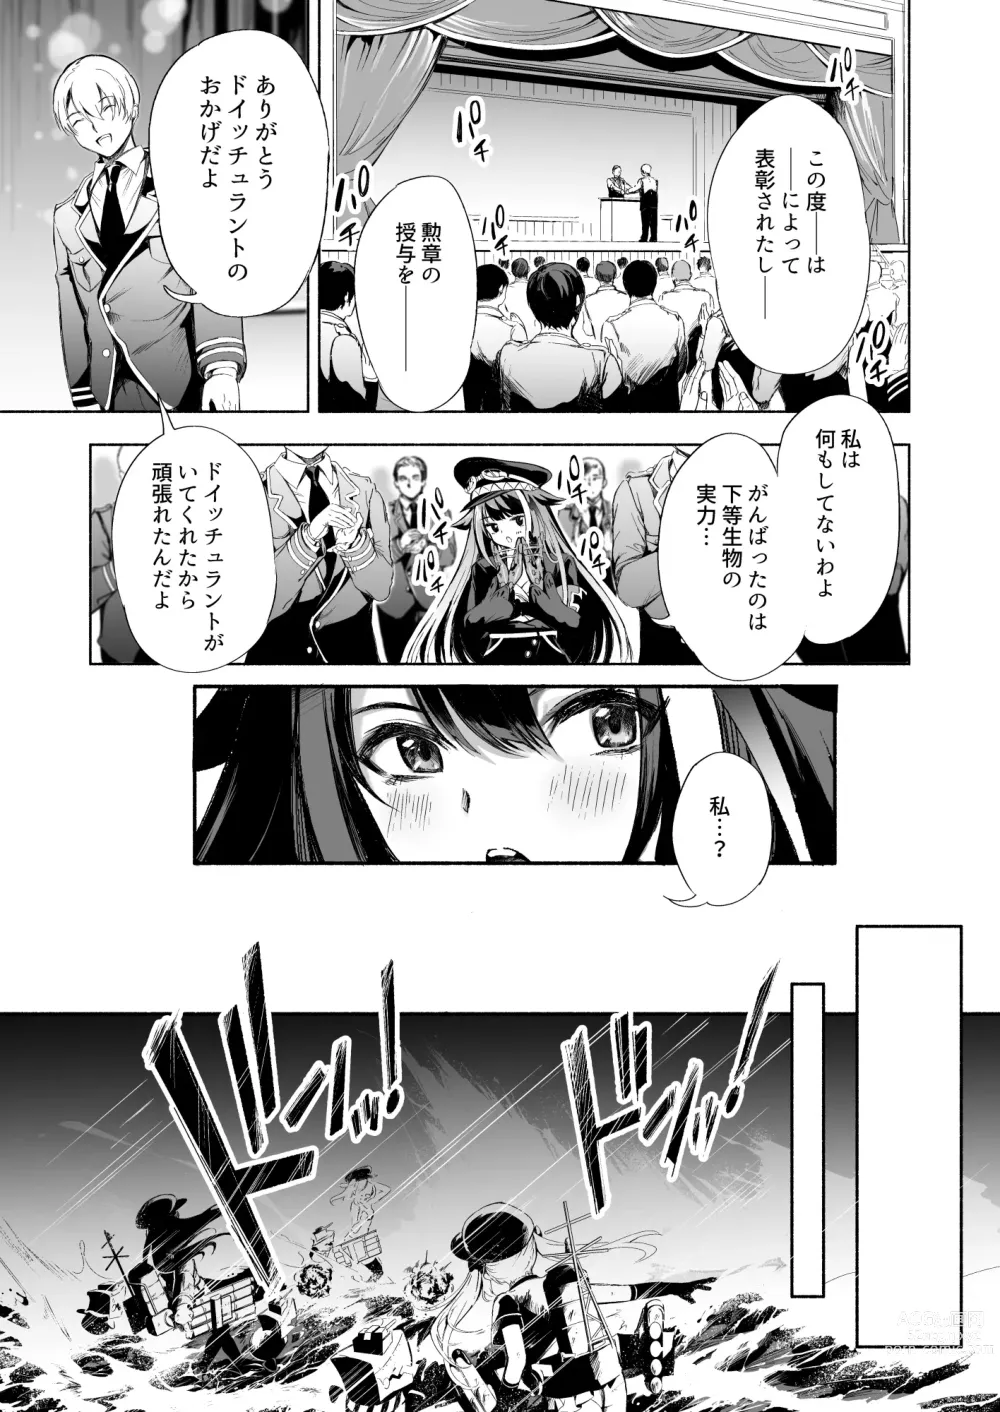 Page 5 of doujinshi Zutto Anata o Aishiteru.